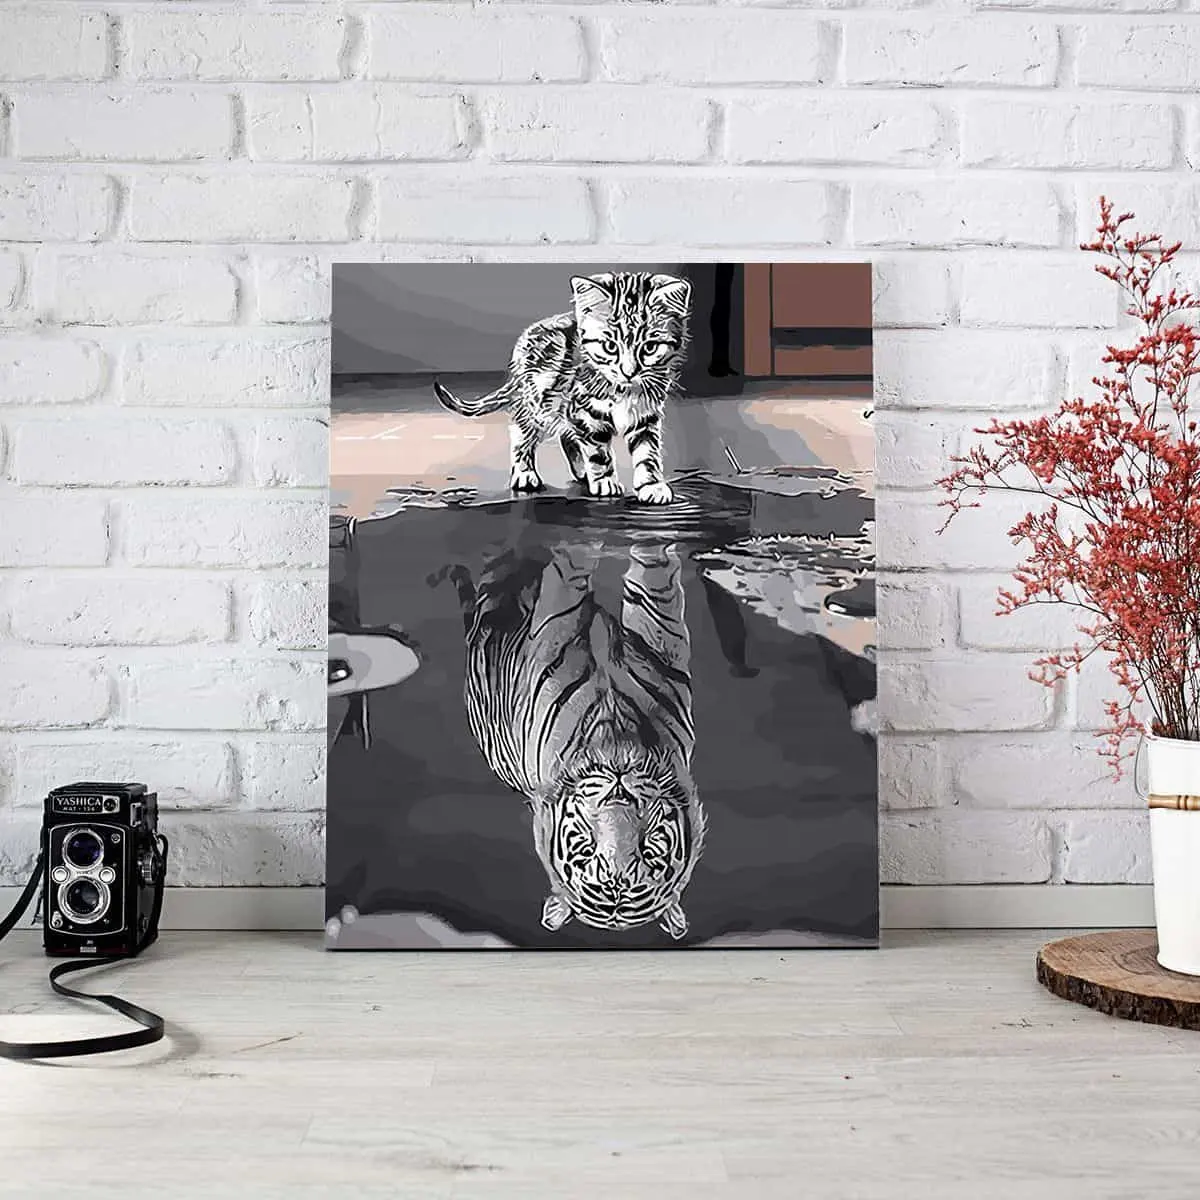 Fournisseurs d'or Orfon 40x50 peinture personnalisée par numéros article croire images de tigre